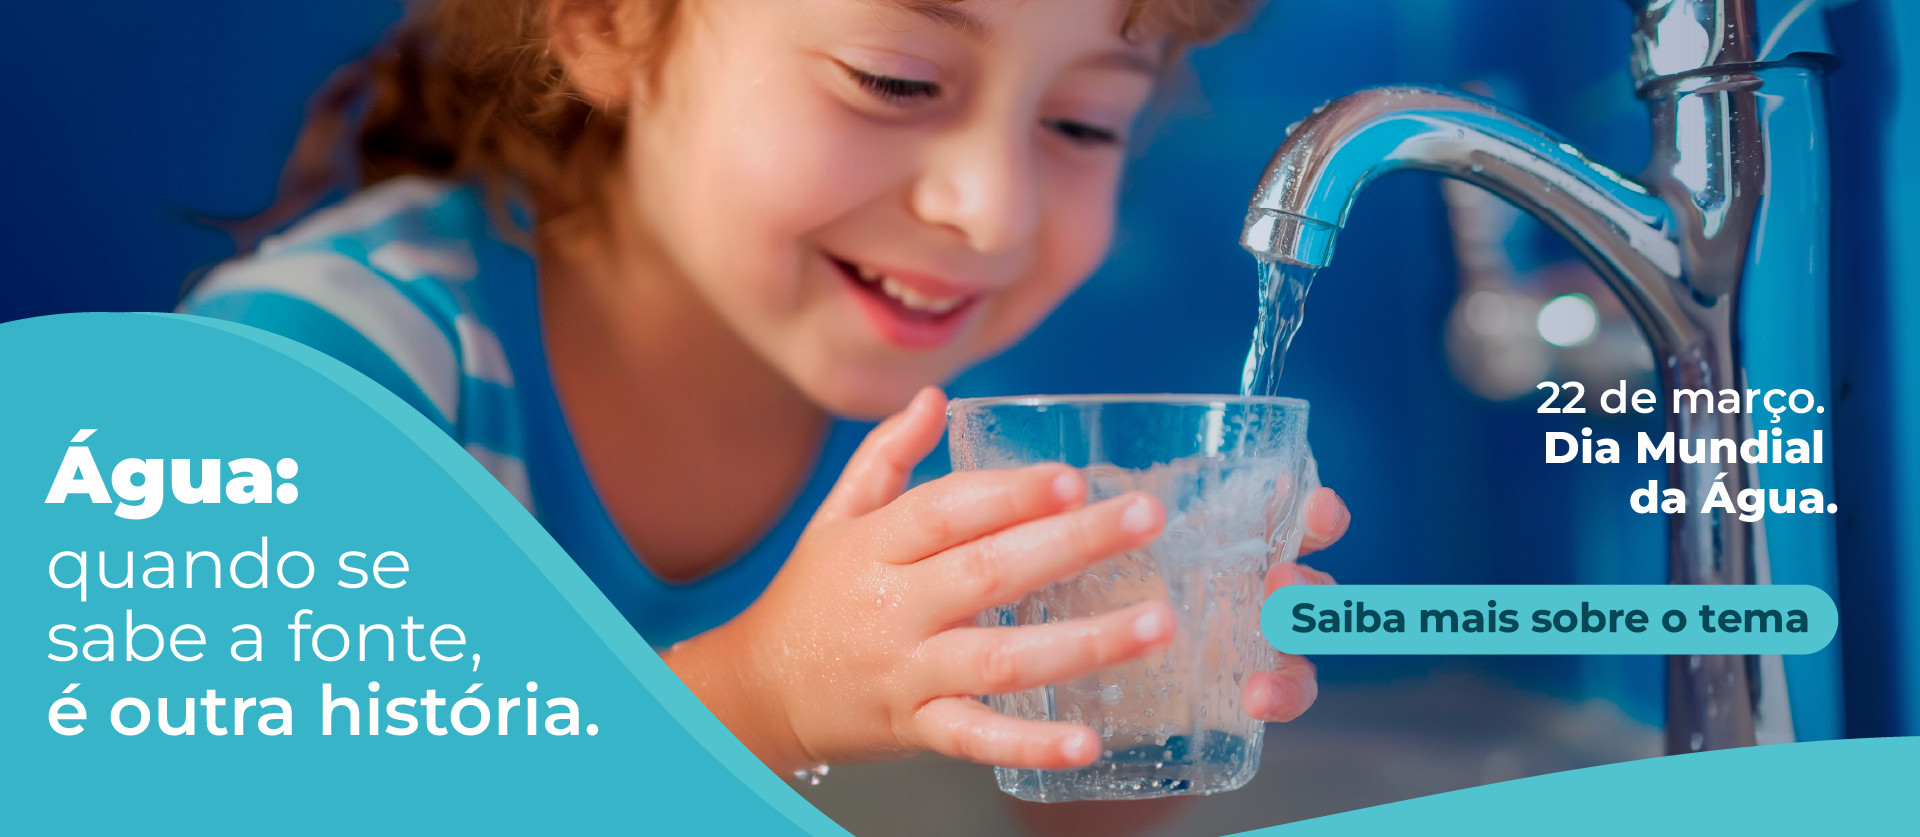 No Dia Mundial da Água, Iguá Saneamento lança campanha sobre a importância de utilizar fontes seguras